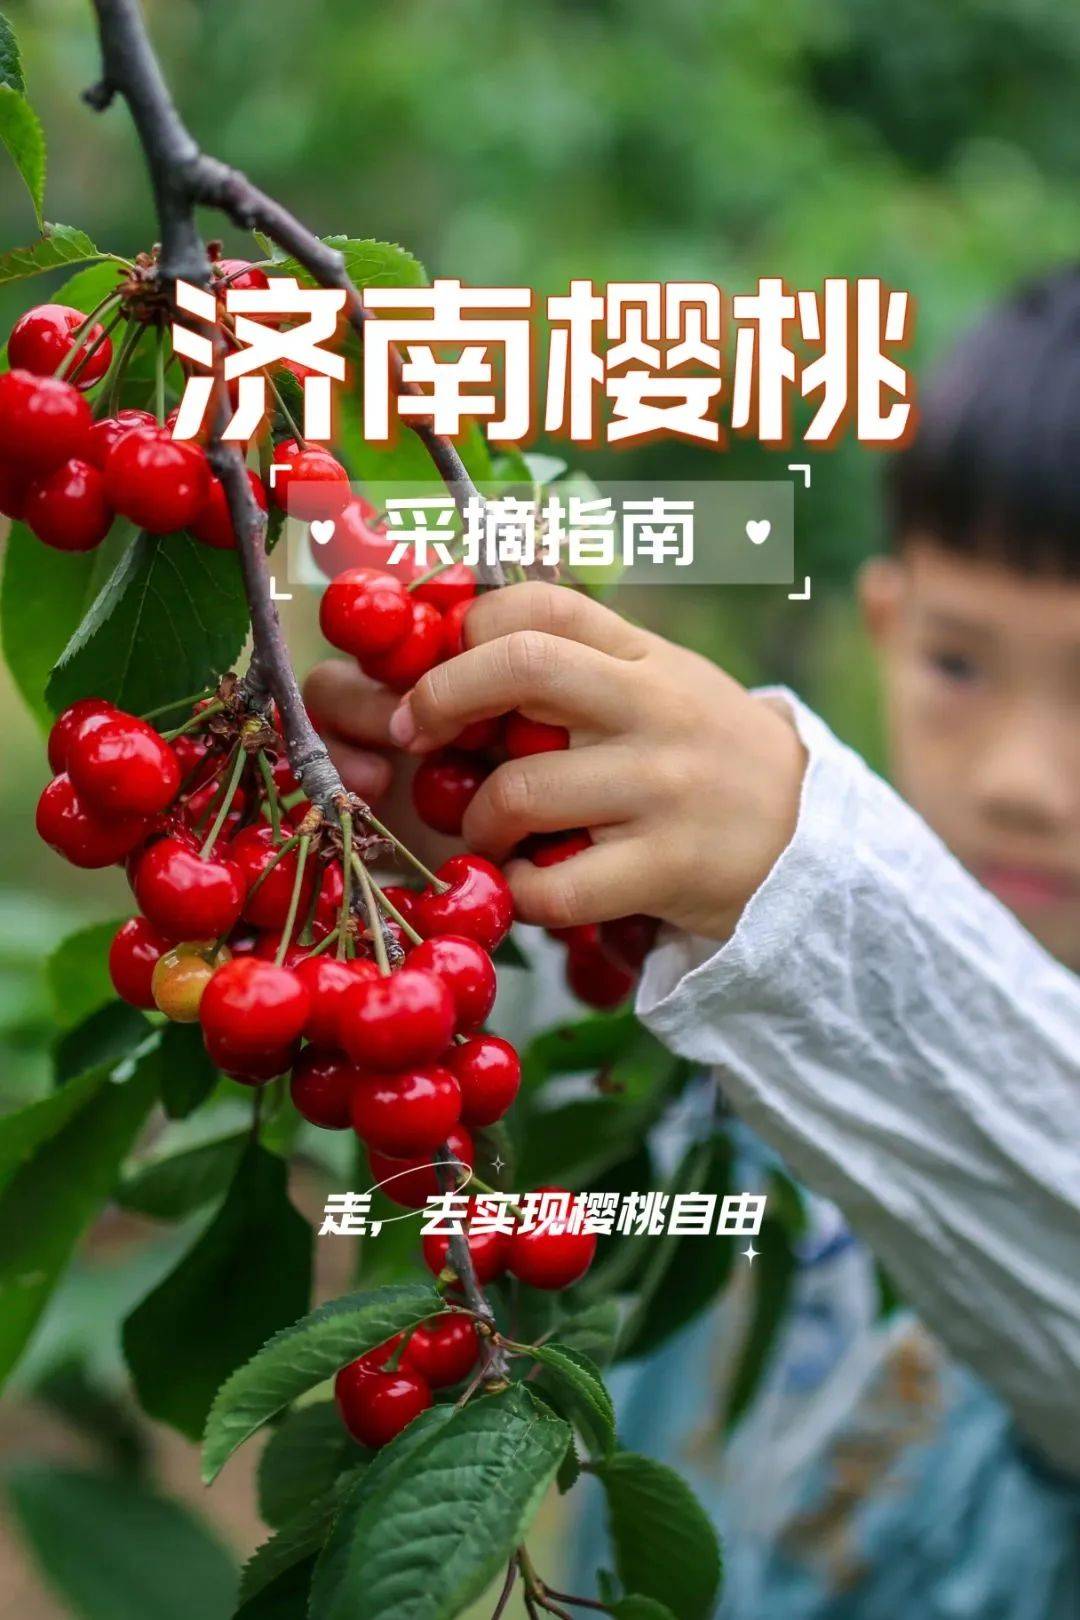 年轻家庭在果园采摘樱桃-蓝牛仔影像-中国原创广告影像素材